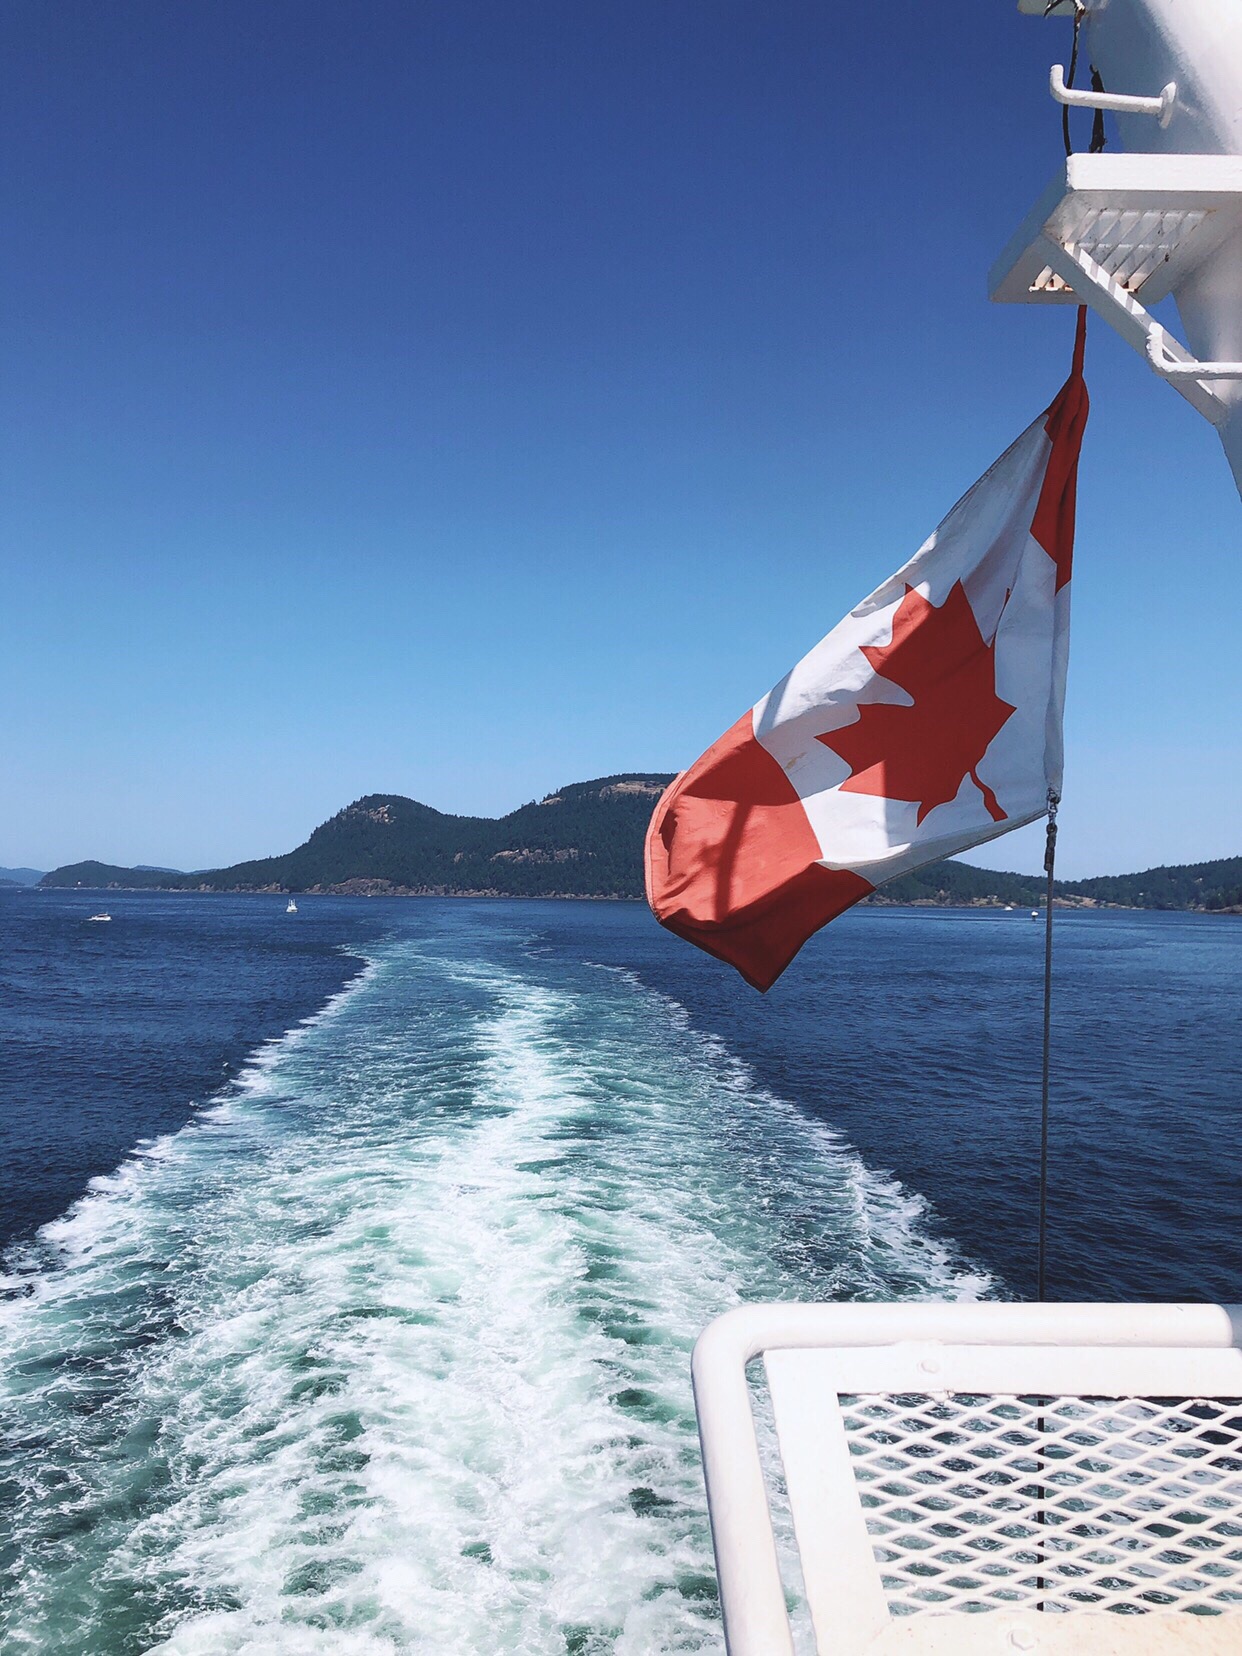 加拿大之旅的尾声…… 乘船从温哥华来到维多利亚。船上热情的小男孩👦不停的和我说着什么🤔，可惜我理解不